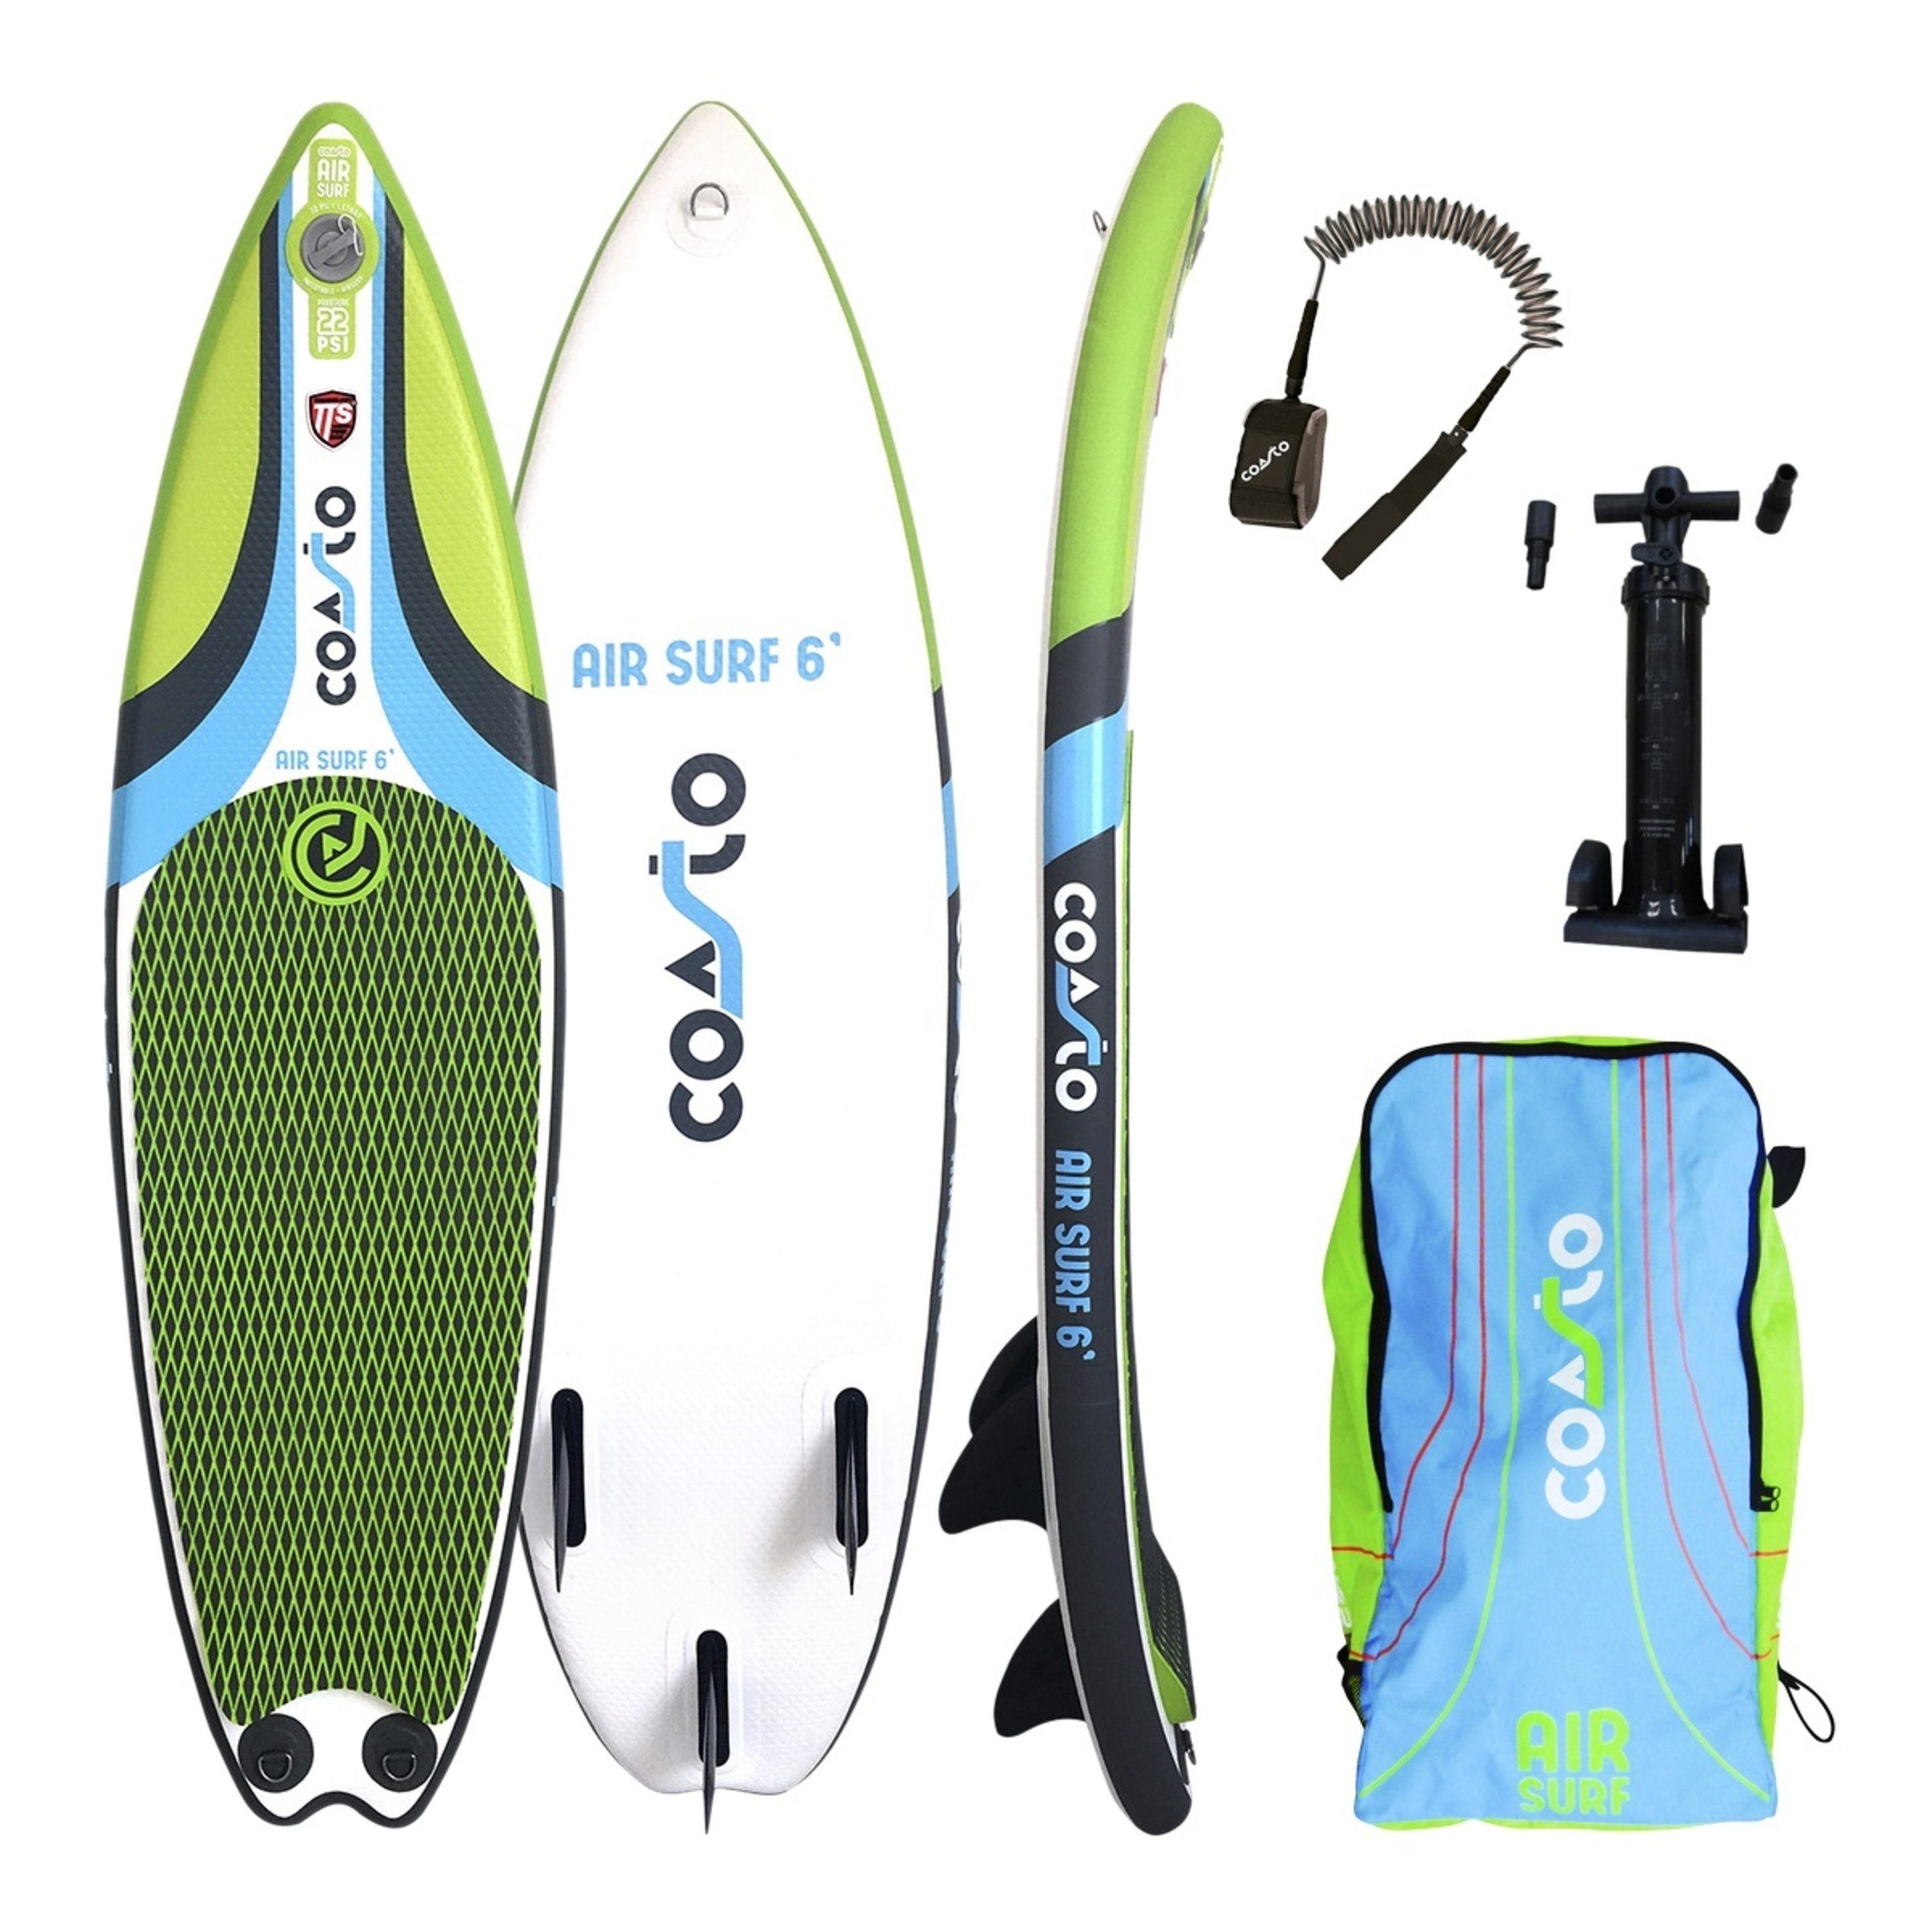 Tabla Surf Hinchable Coasto Airsurf 6' Con Quillas Fijas - multicolor - 